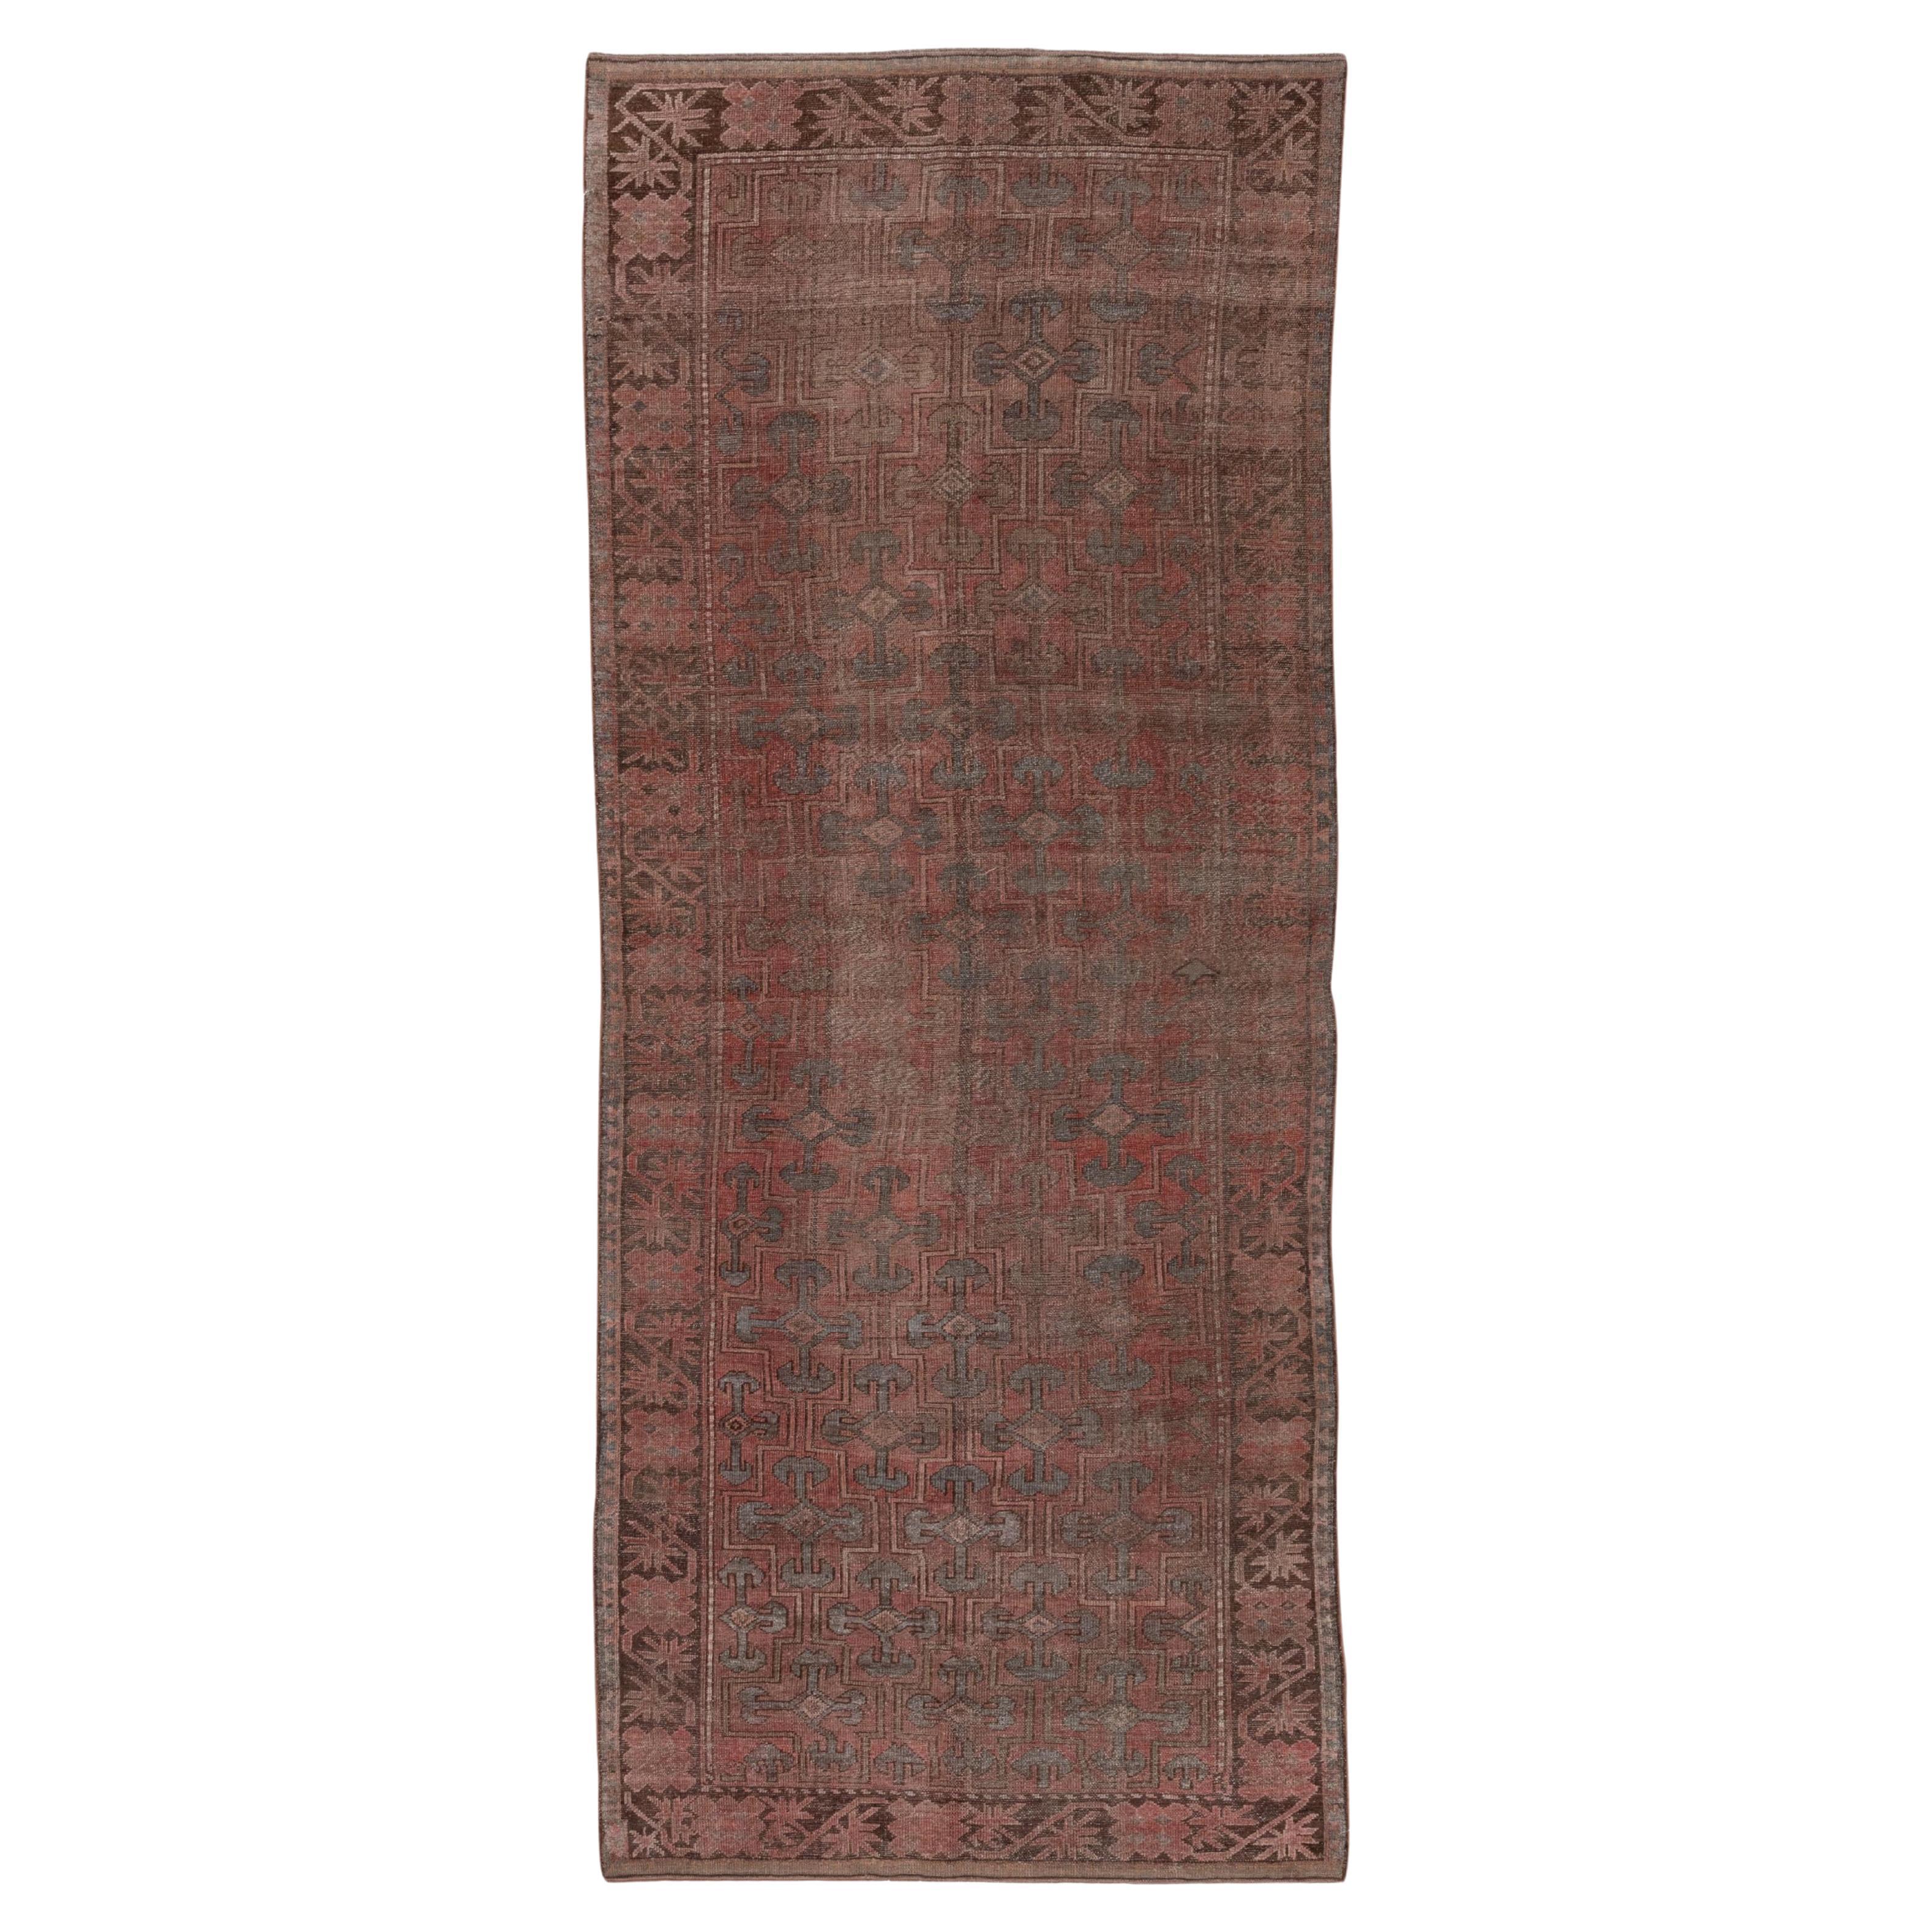 Antiker Khotan-Galerie-Teppich aus den 1910er Jahren, Periwinkle & Rosa Palette